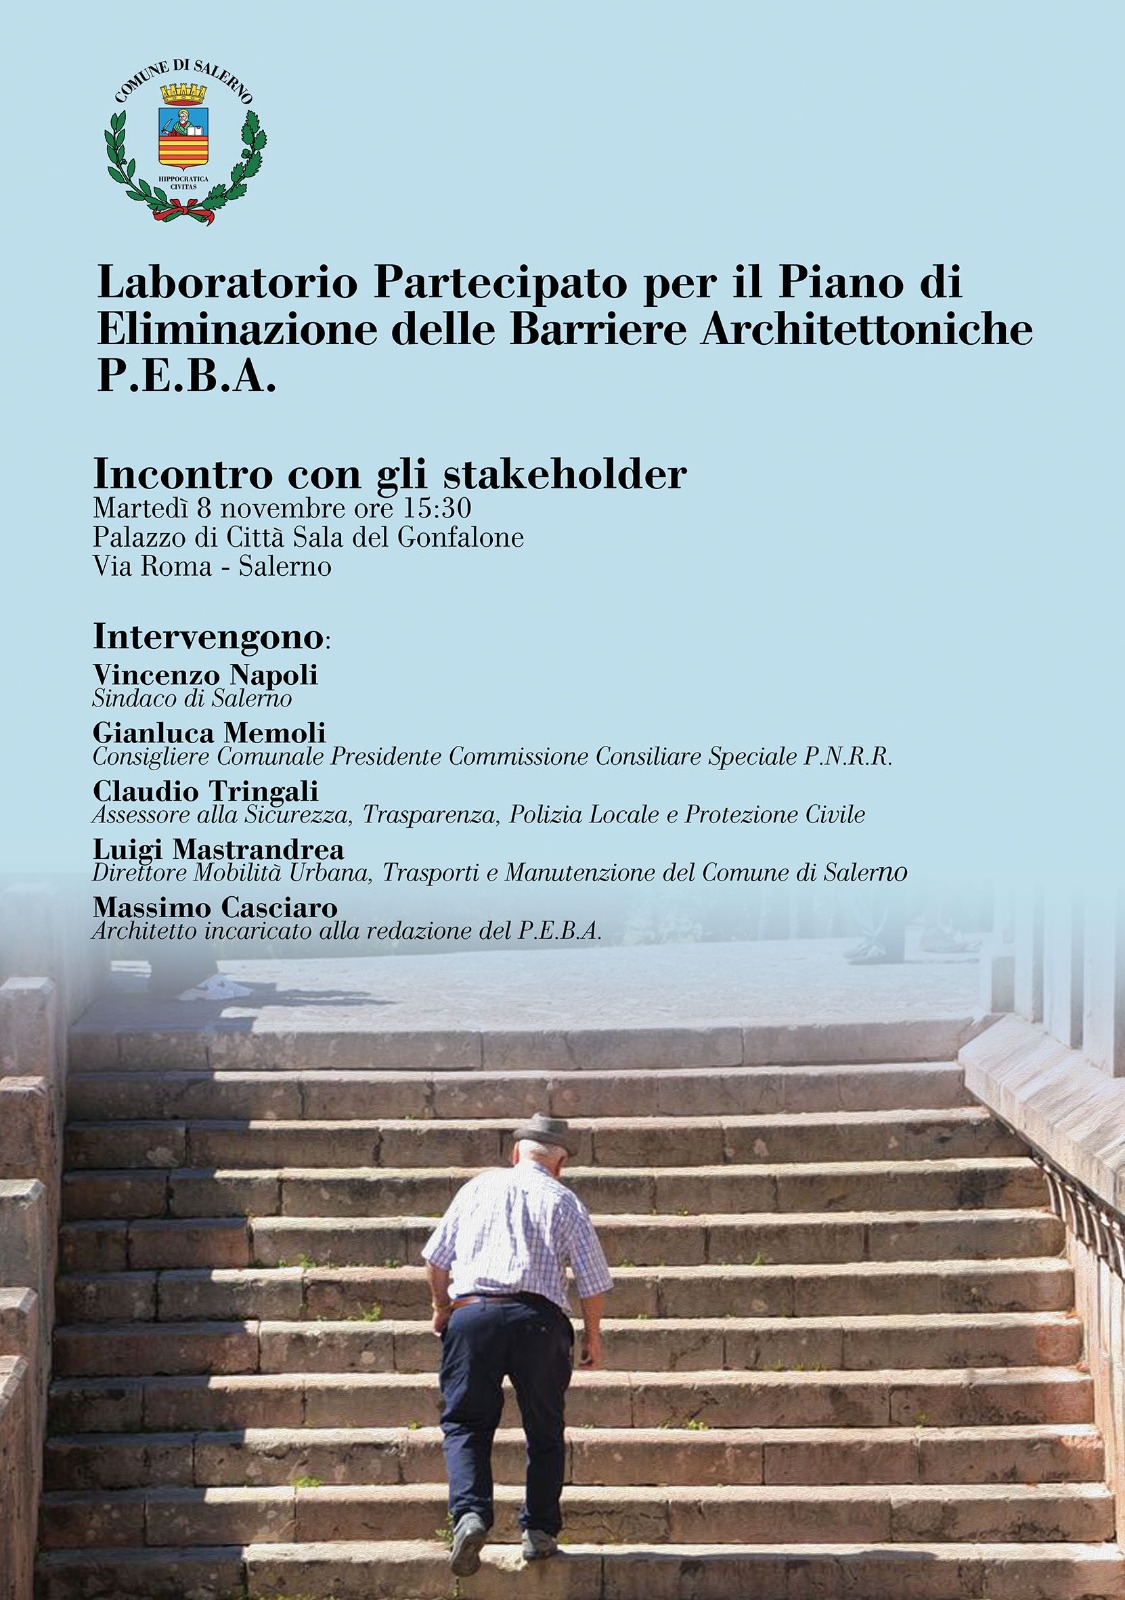 Salerno: Laboratorio Partecipato per Piano Eliminazione Barriere Architettoniche (P.E.B.A.) incontro con stakeholder